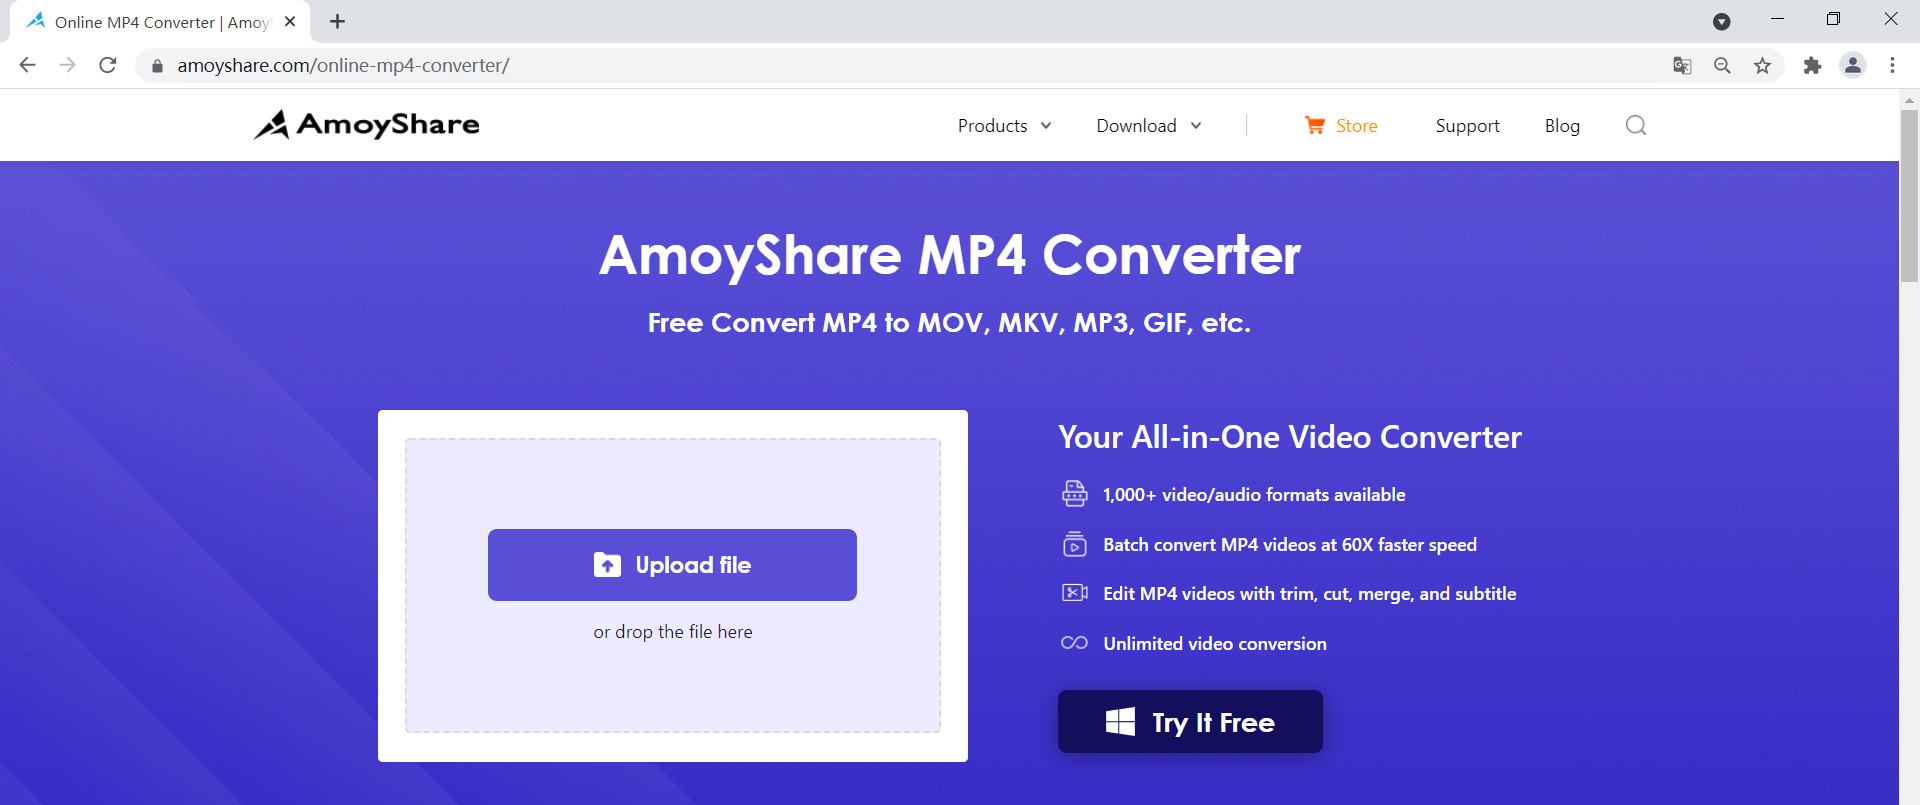 Laden Sie die WebM-Datei in den AmoyShare MP4 Converter hoch